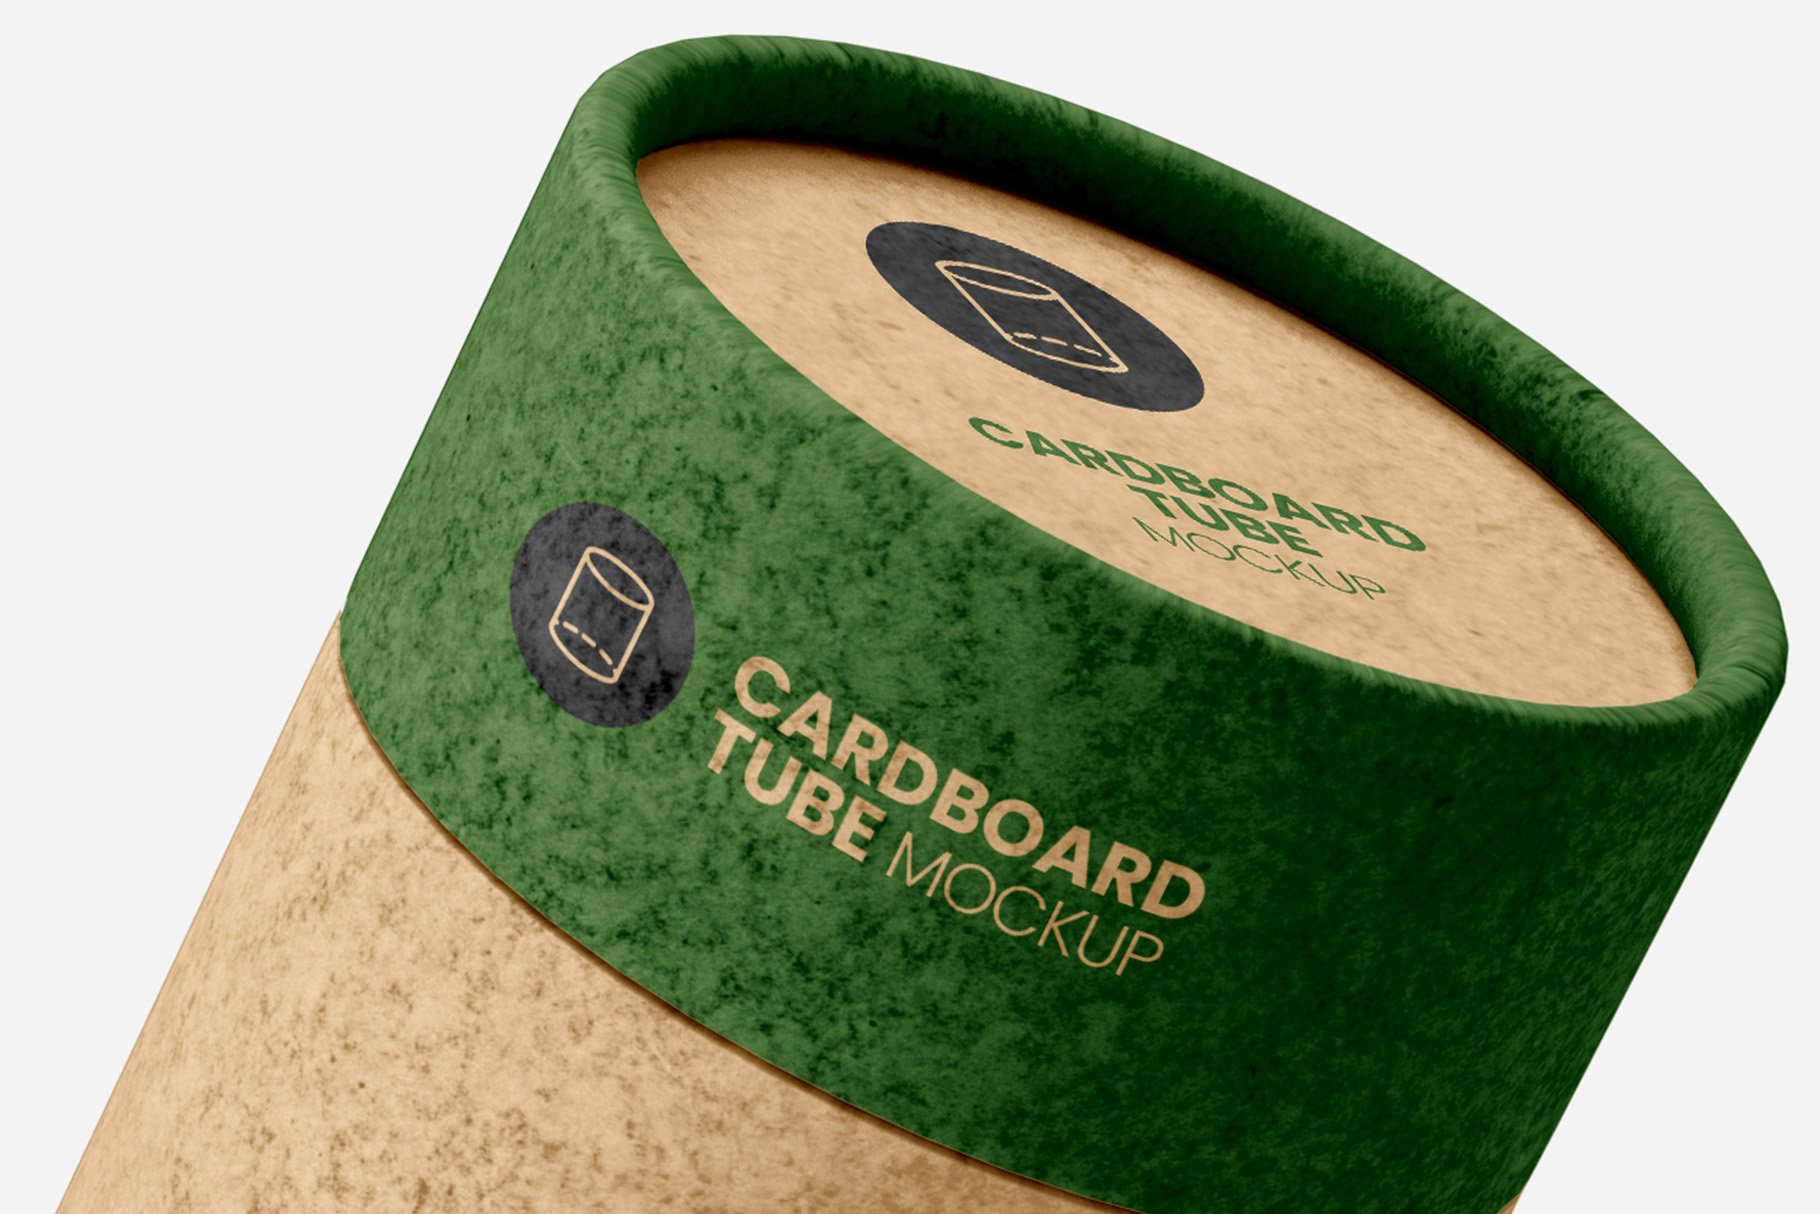 08 7款纸板管容器包装设计样机 Cardboard Tube Mockup – 7 views